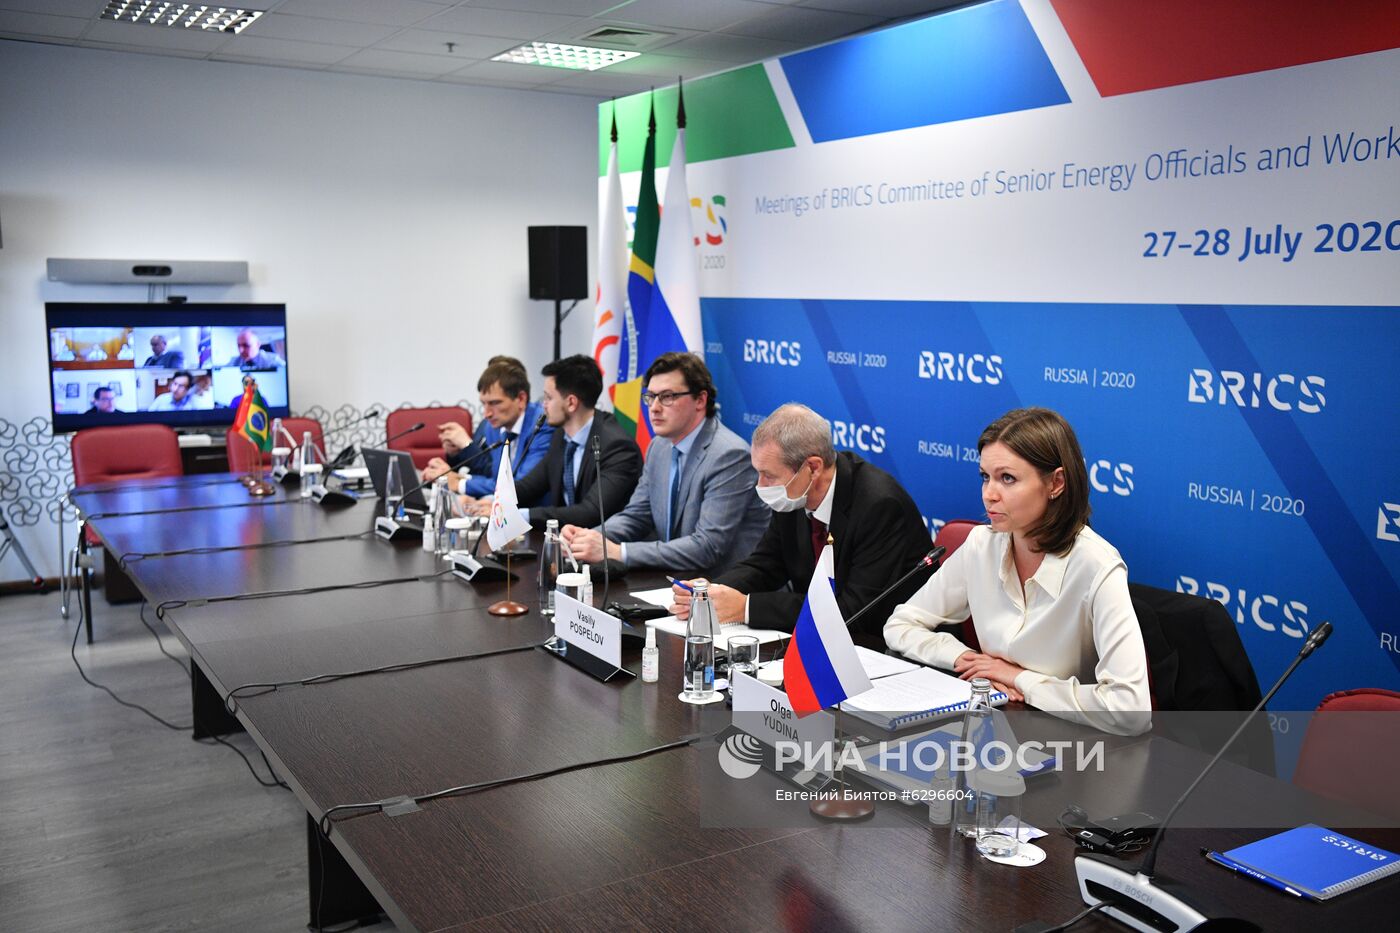 Заседания Комитета старших должностных лиц по энергетике и Рабочей группы БРИКС по энергоэффективности